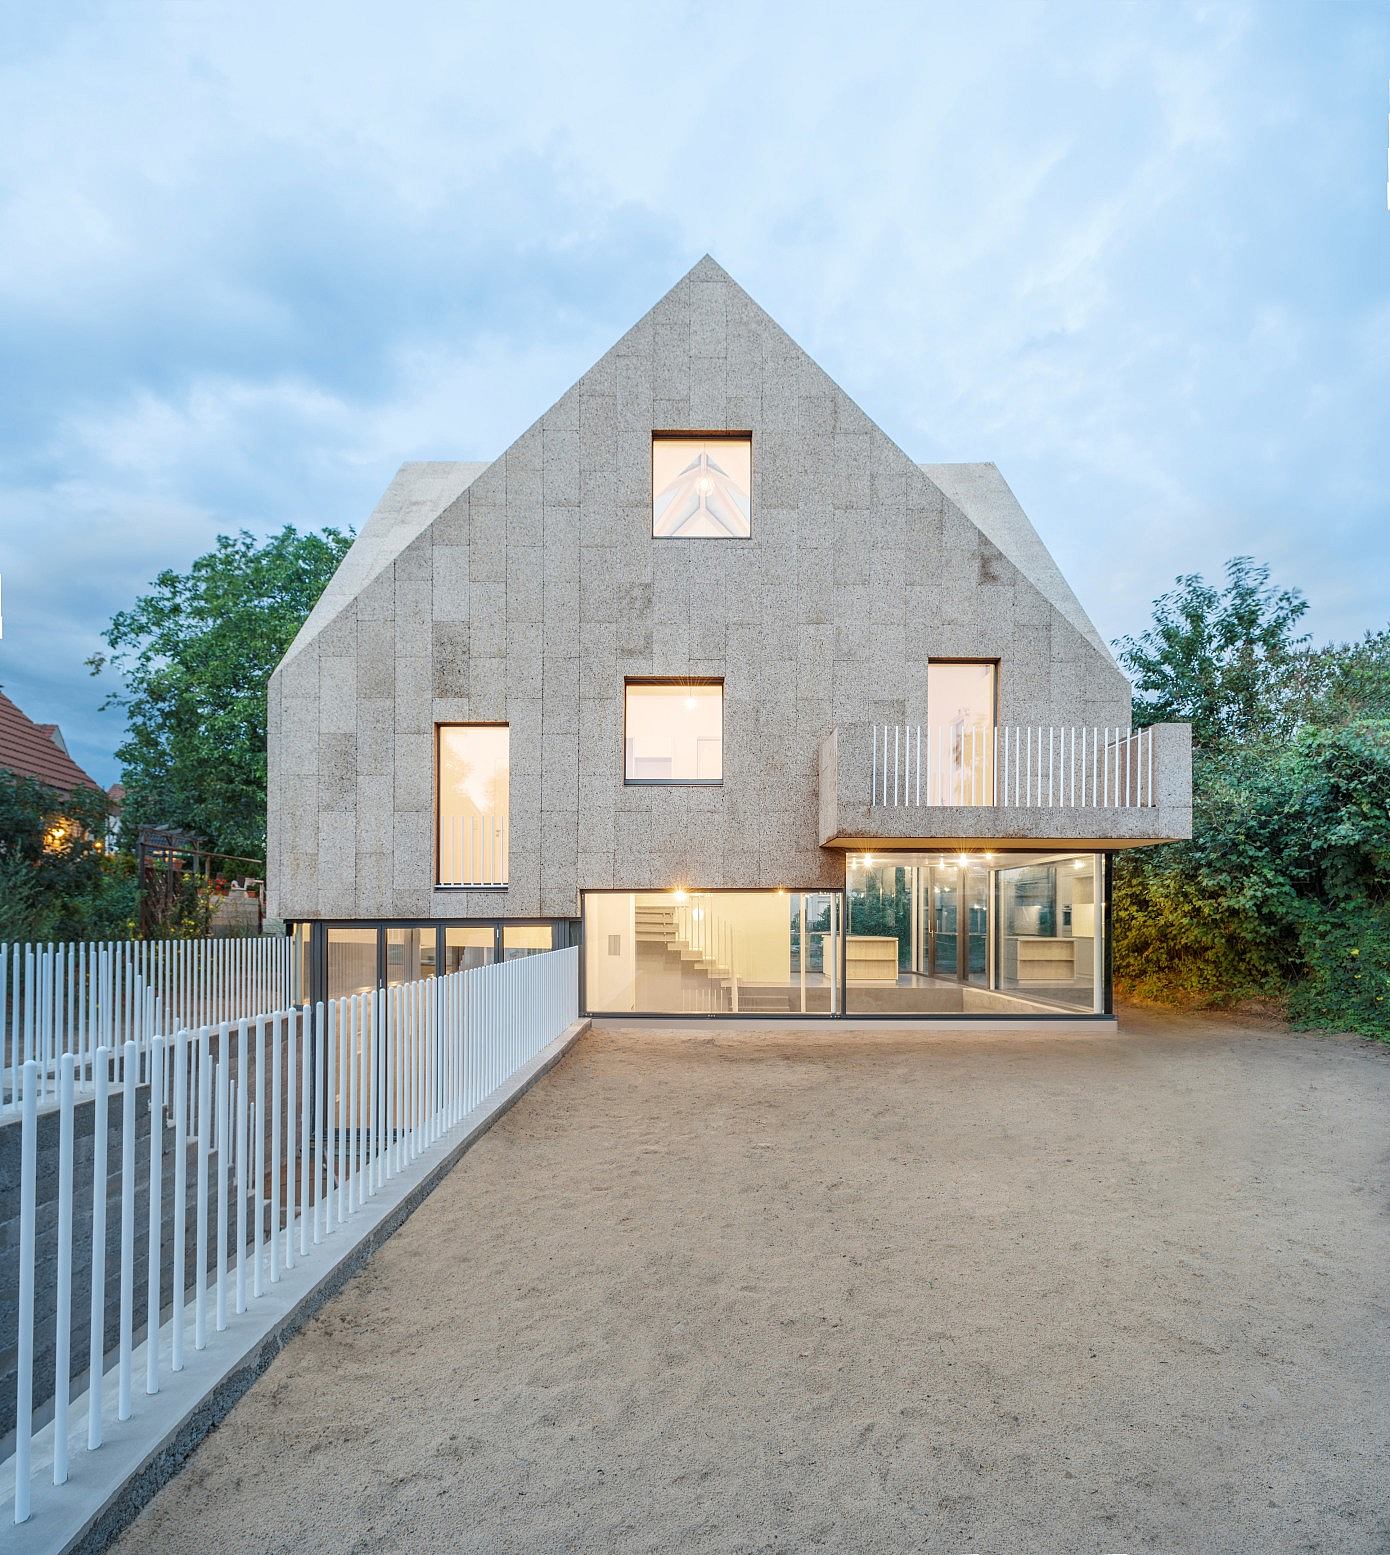 Corkscrew House by Rundzwei Architekten